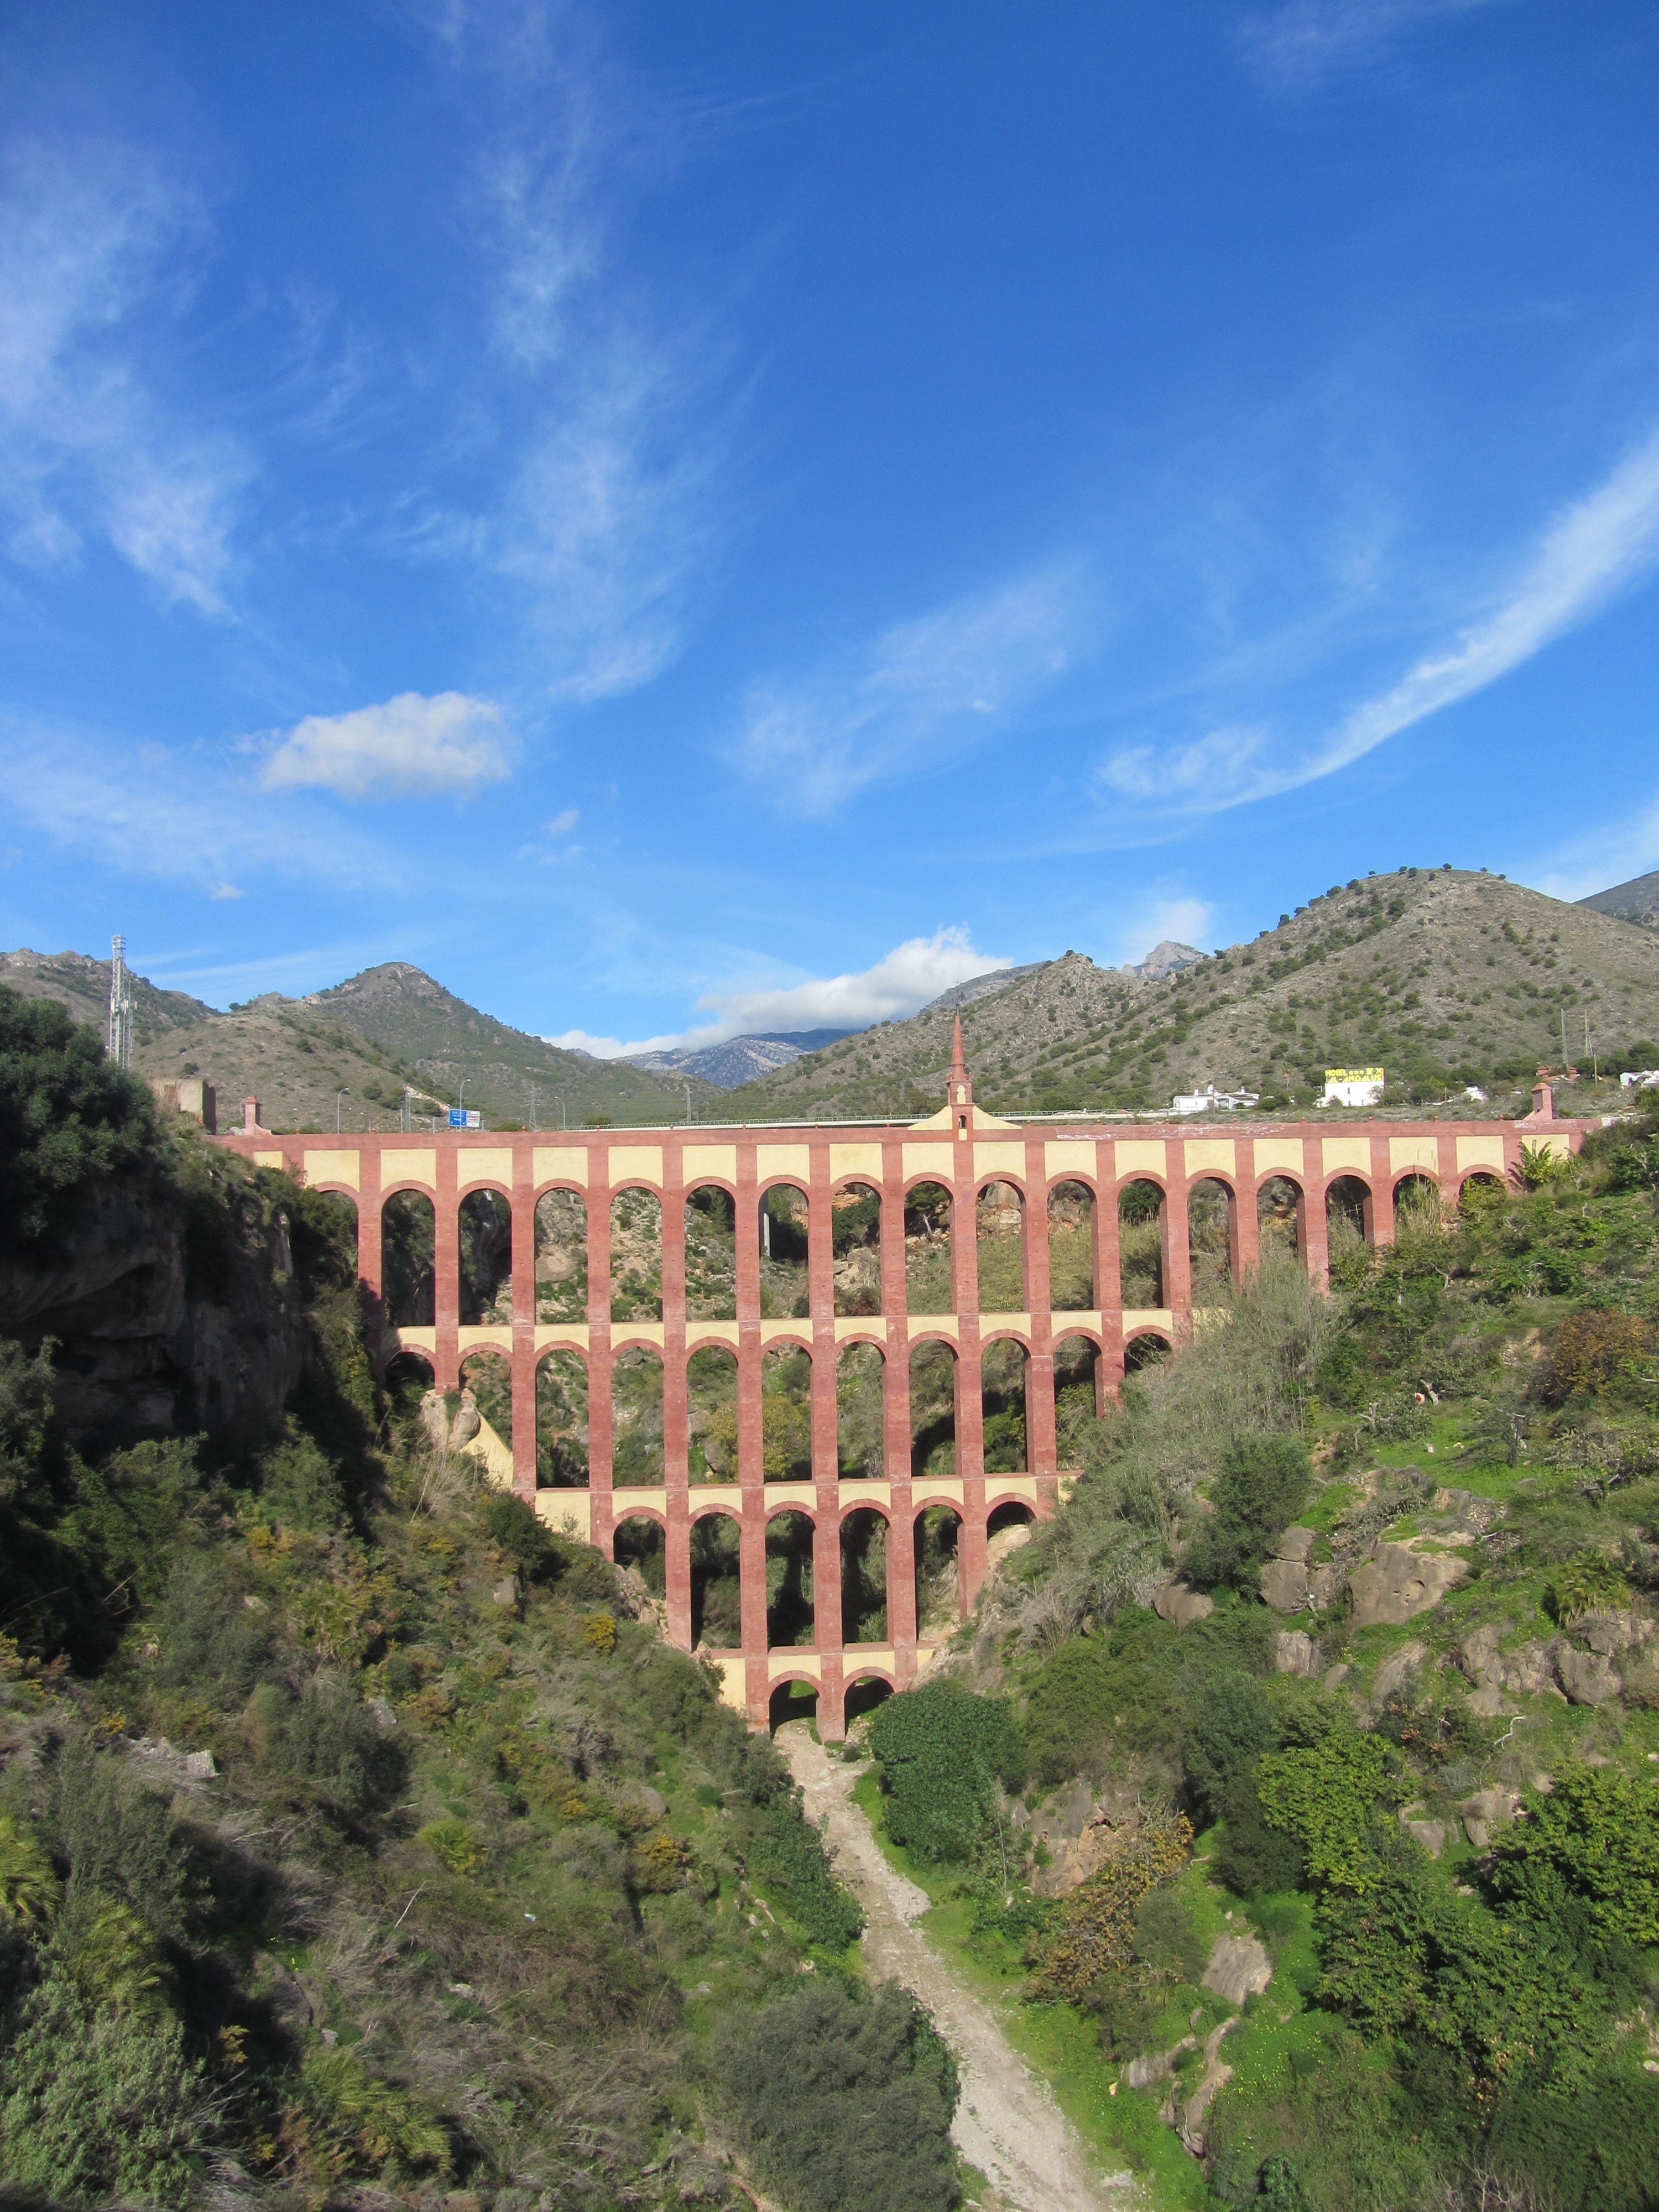 The Eagle Aqueduct